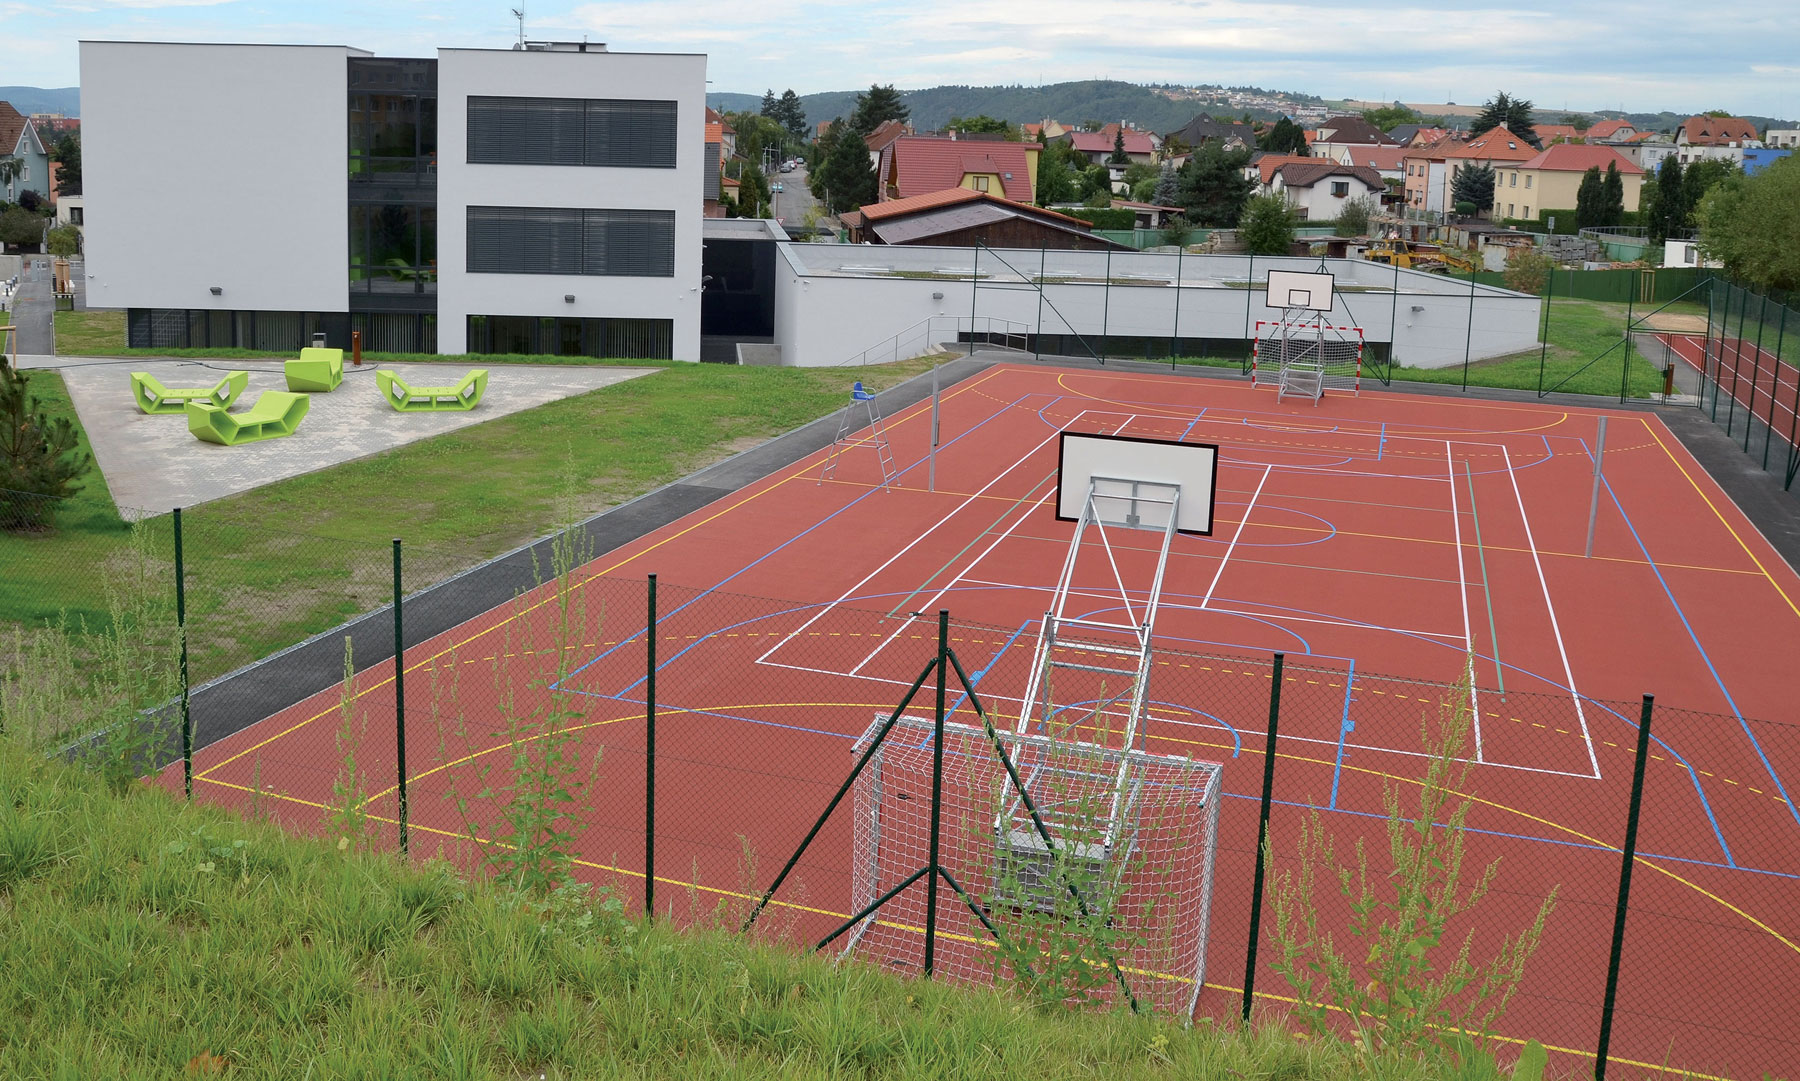 Rakúske gymnázium sa skladá z hlavnej trojposchodovej budovy, telocvične, viacúčelového ihriska a tartanovej bežeckej dráhy.